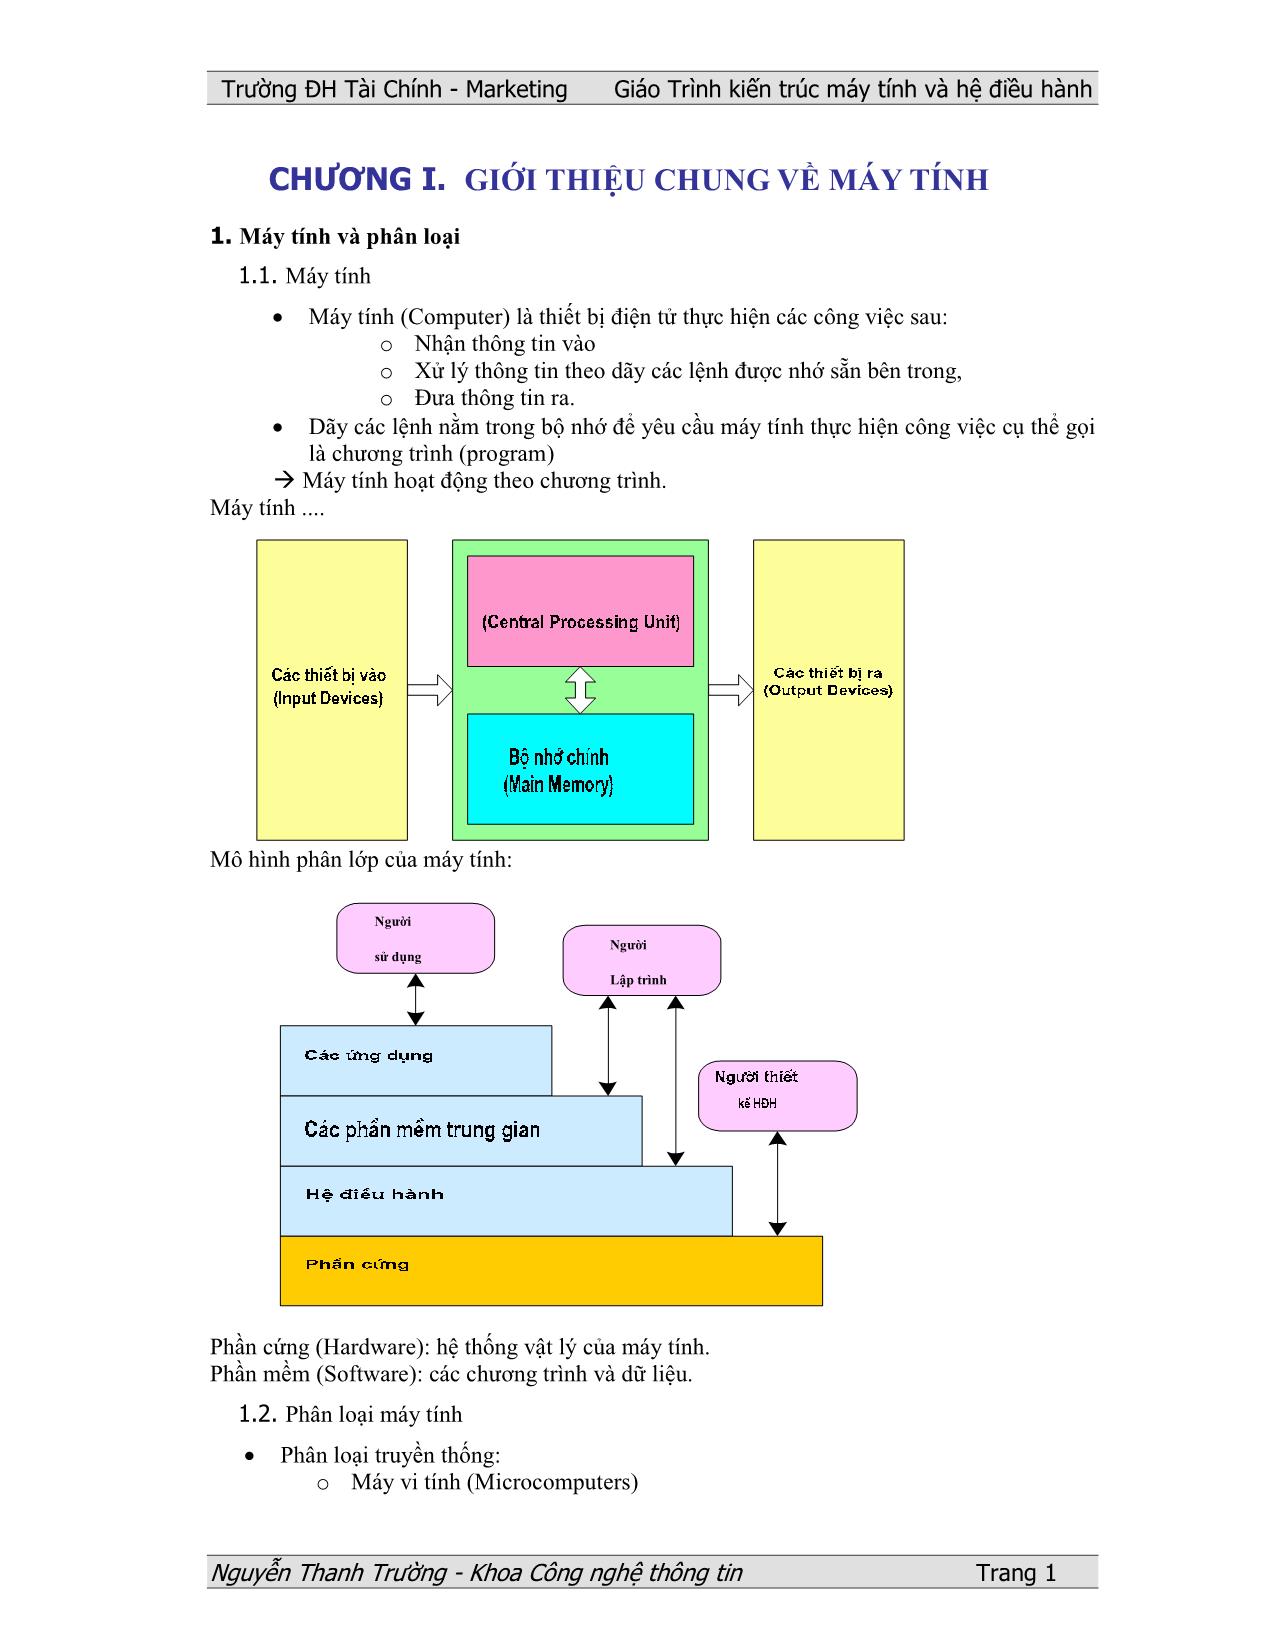 Giáo trình Kiến trúc máy tính và hệ điều hành (Phần 1) trang 2